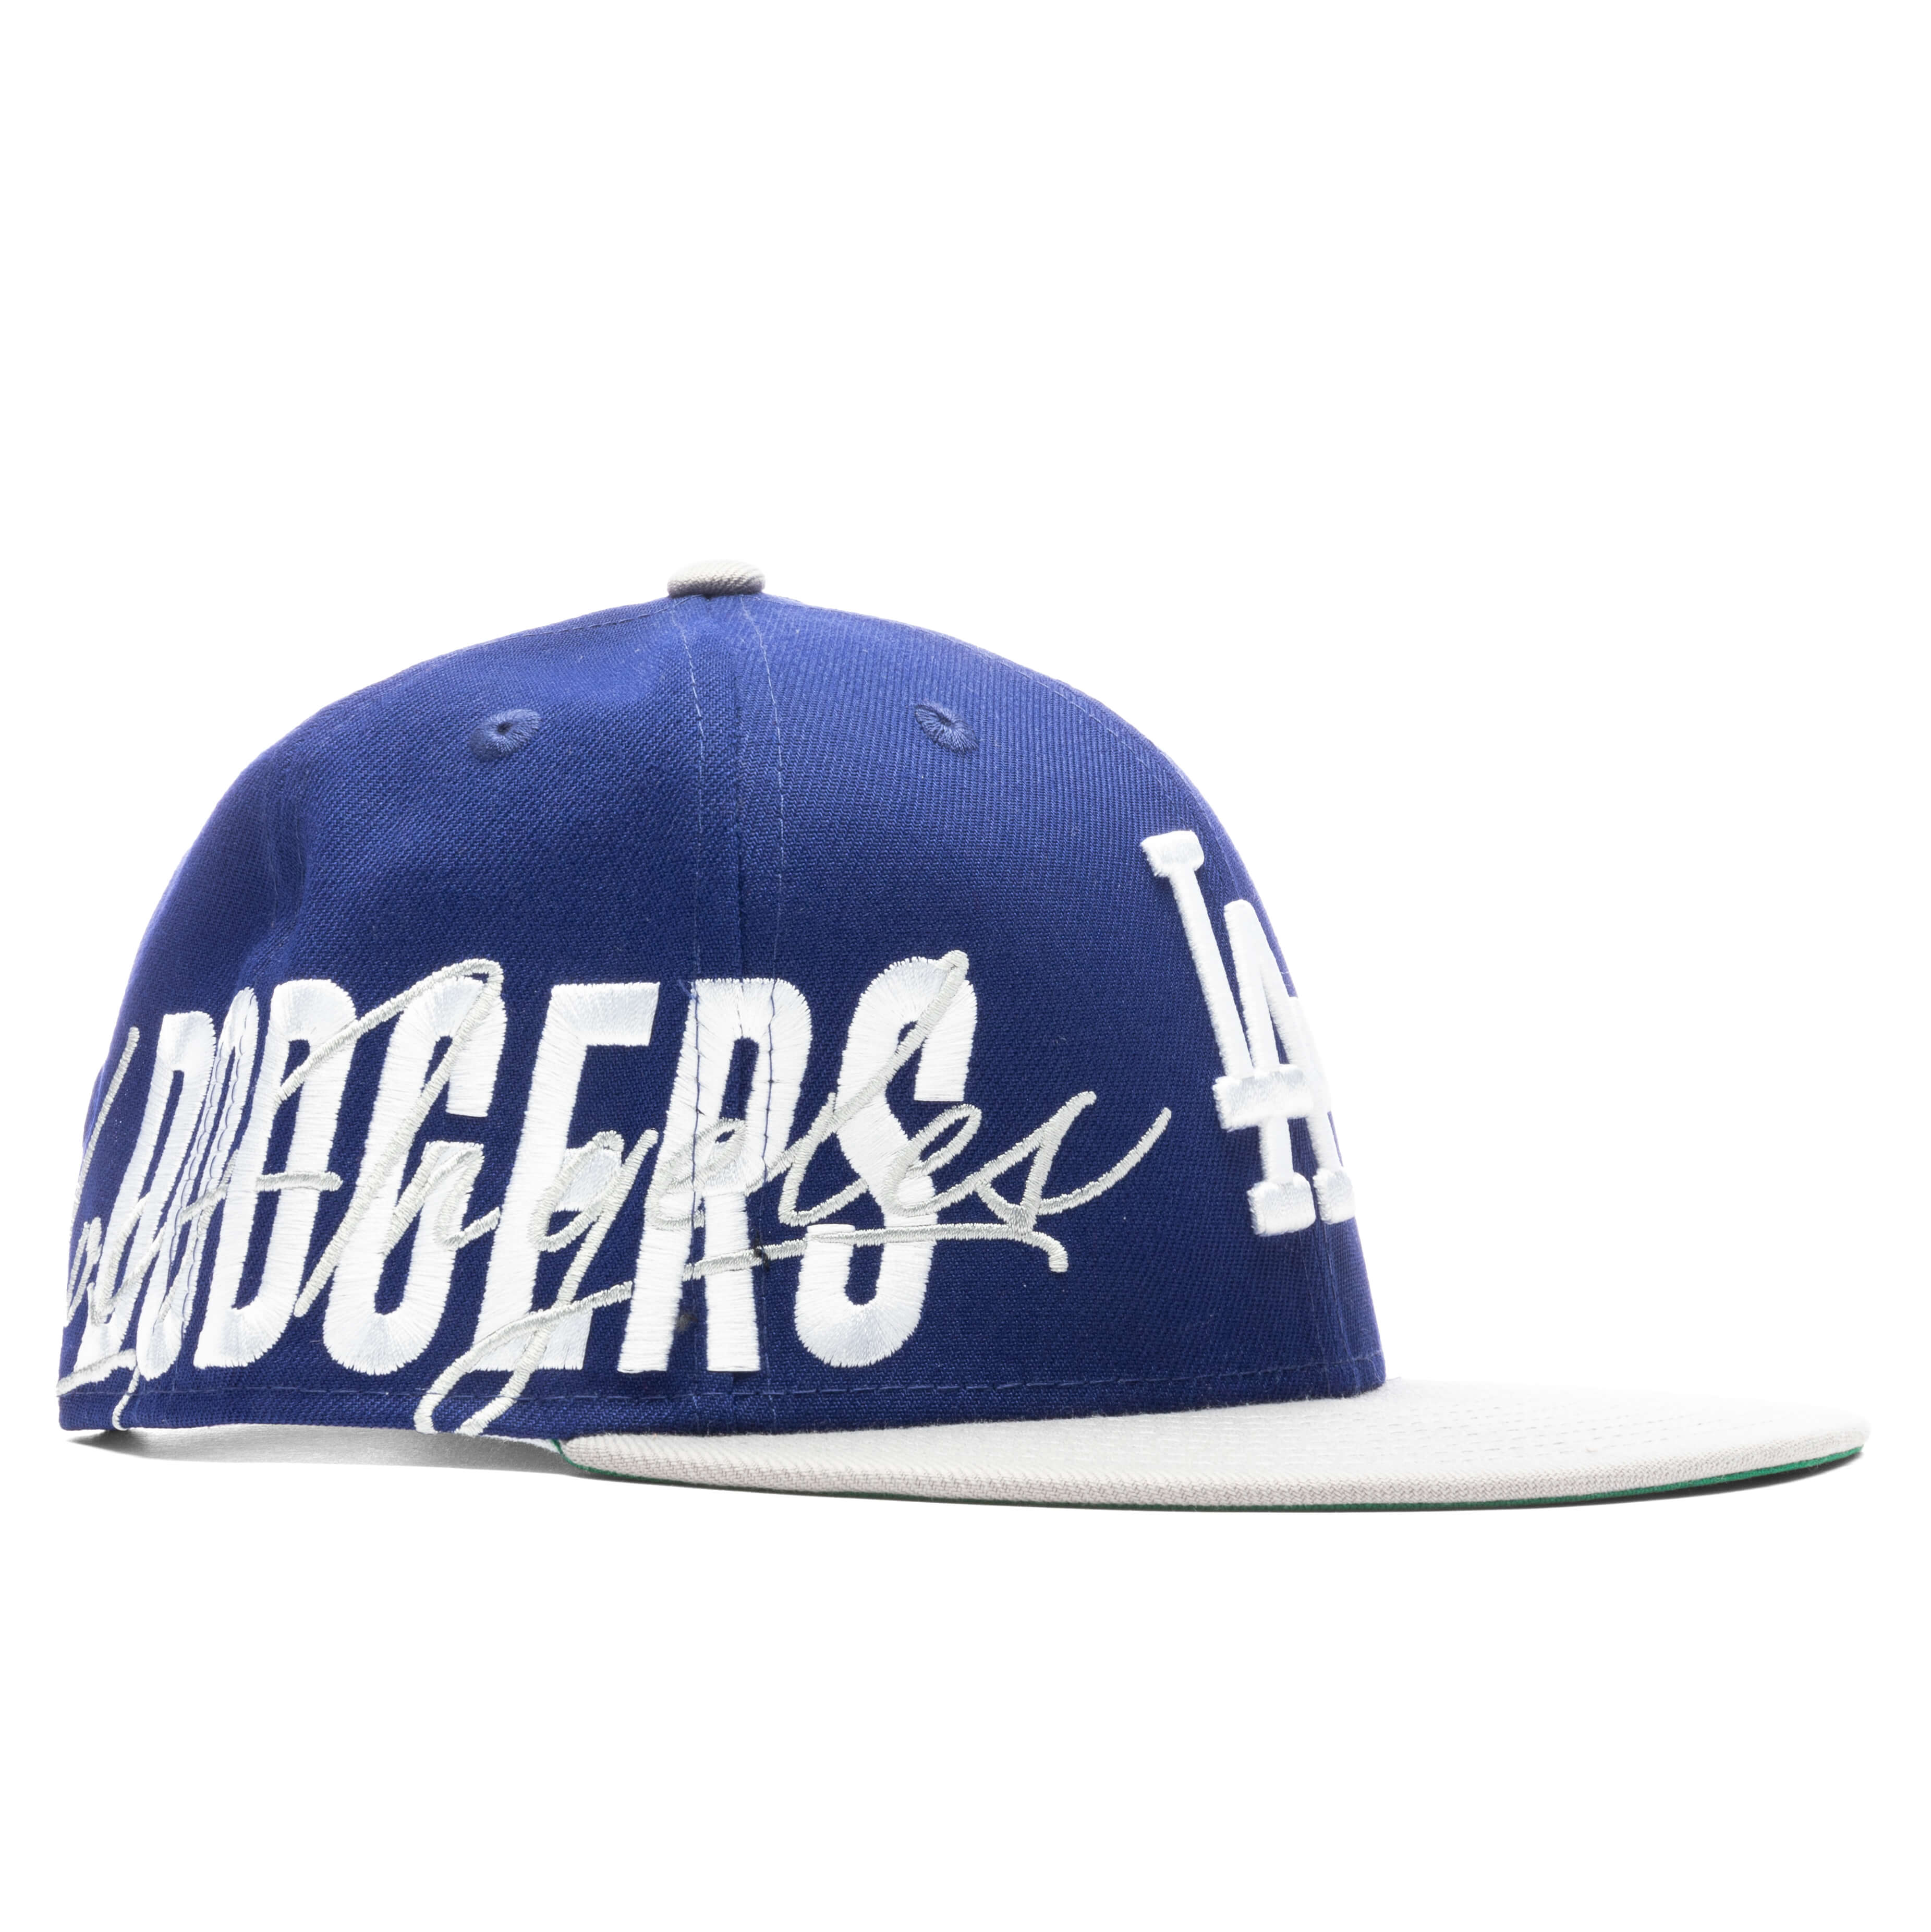 Sidefont 950 Adjustable - Los Angeles Dodgers, , large image number null